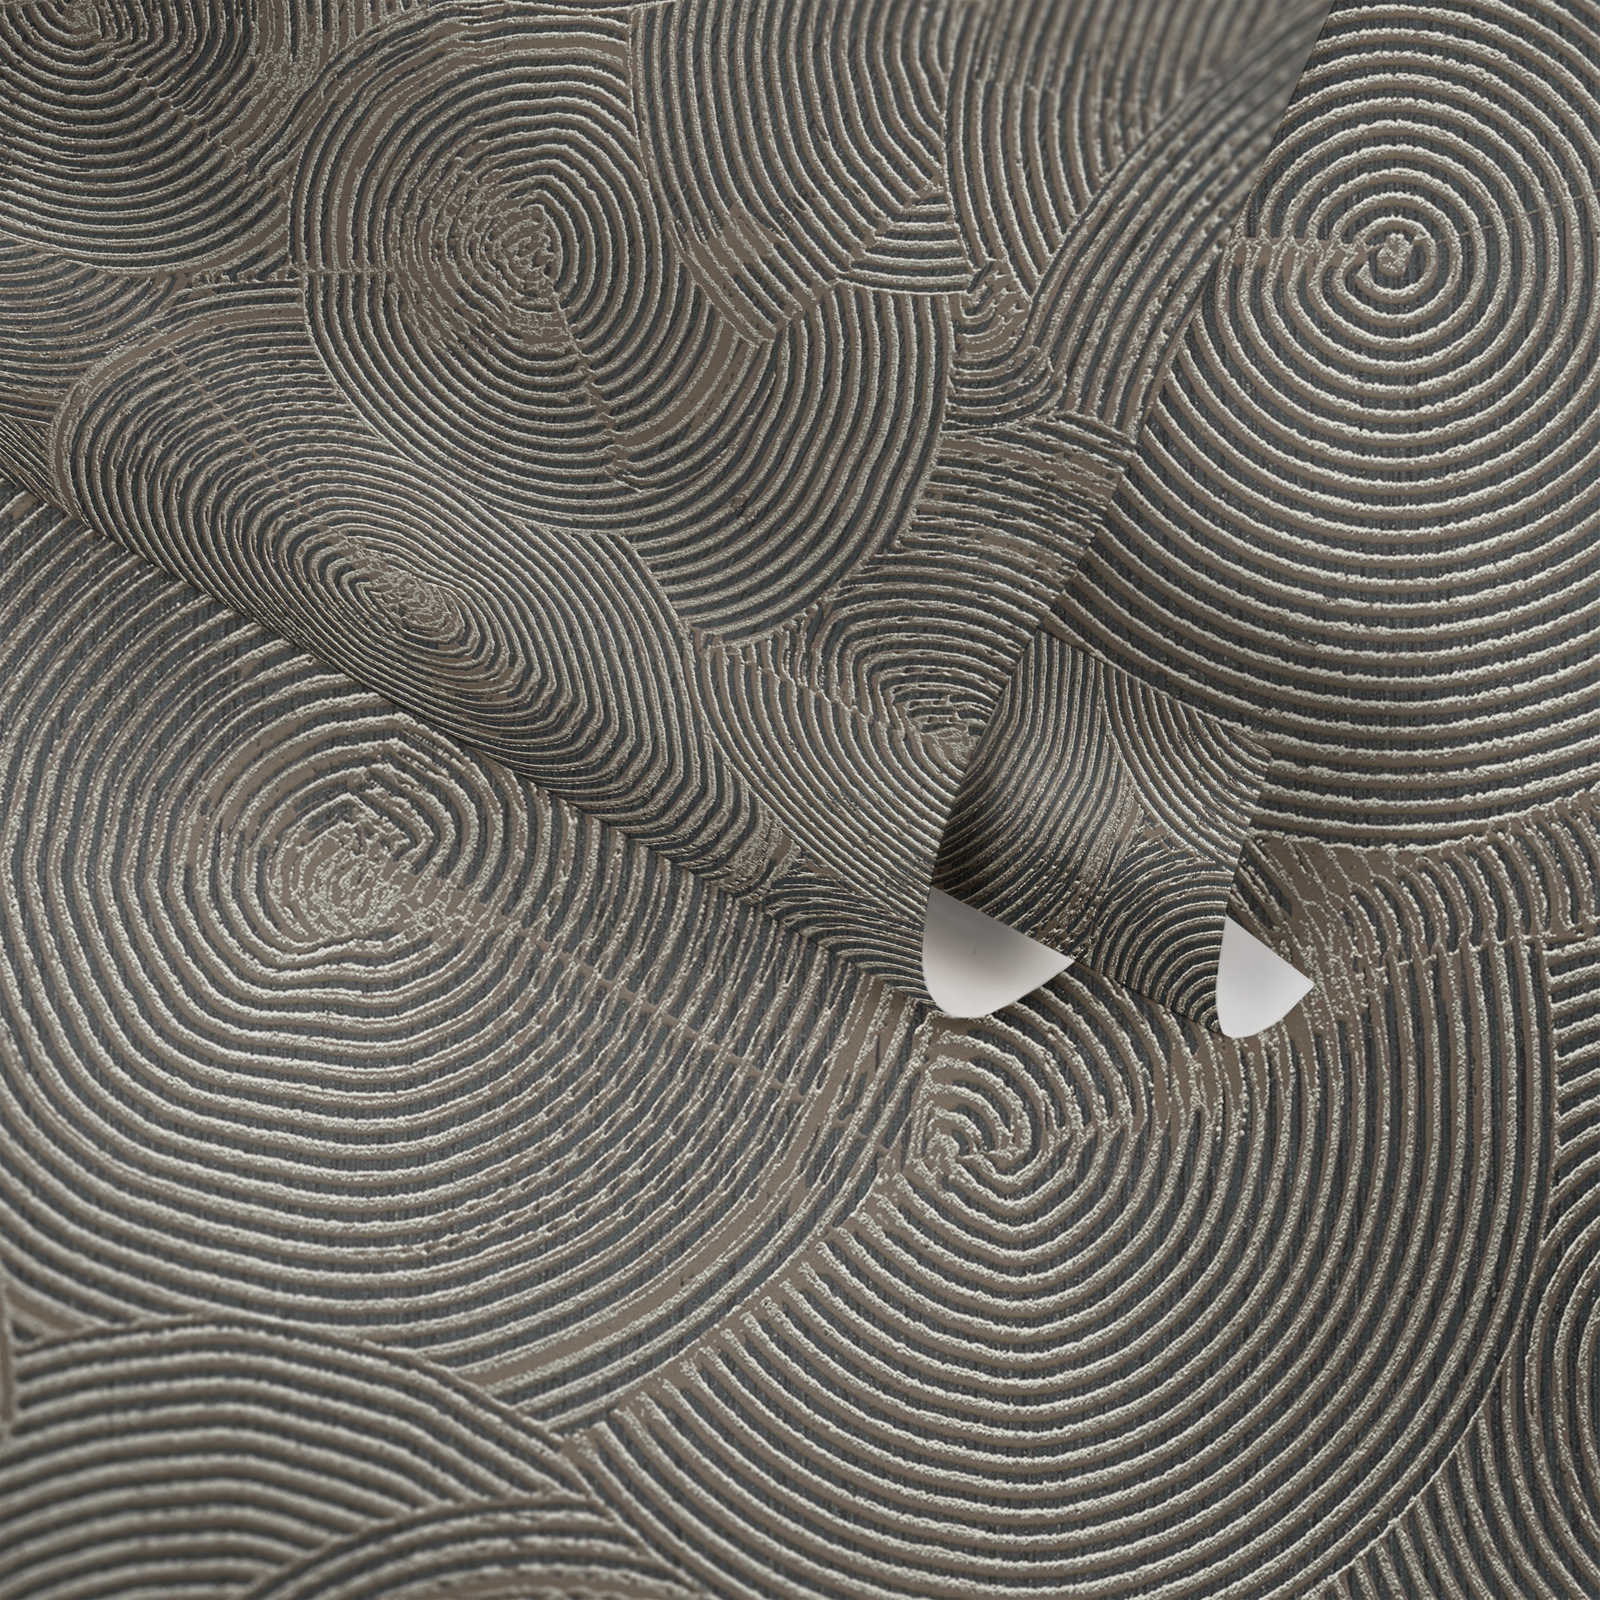             behang moderne gipslook met metallic effect - bruin, metallic, zwart
        